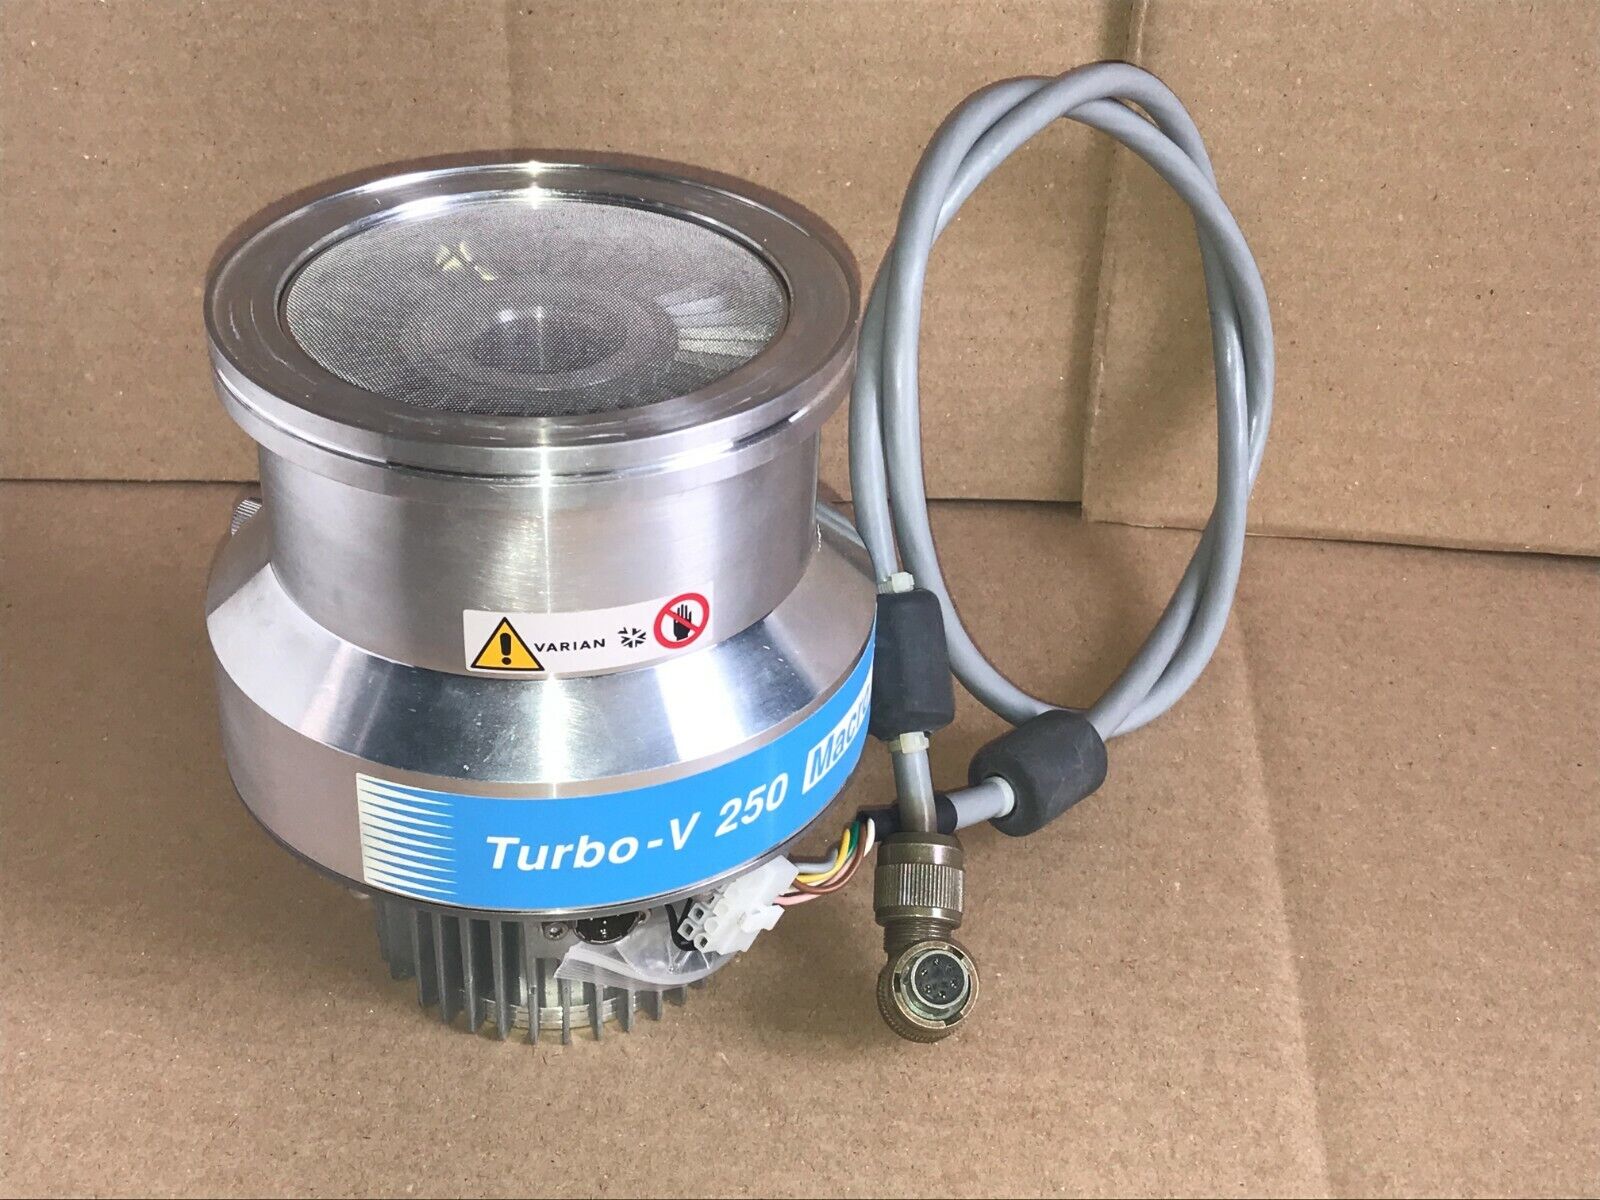 Varian Turbo-V 250 Macro Torr Turbo Molecular Vacuum Pump 969-9007 TV 250